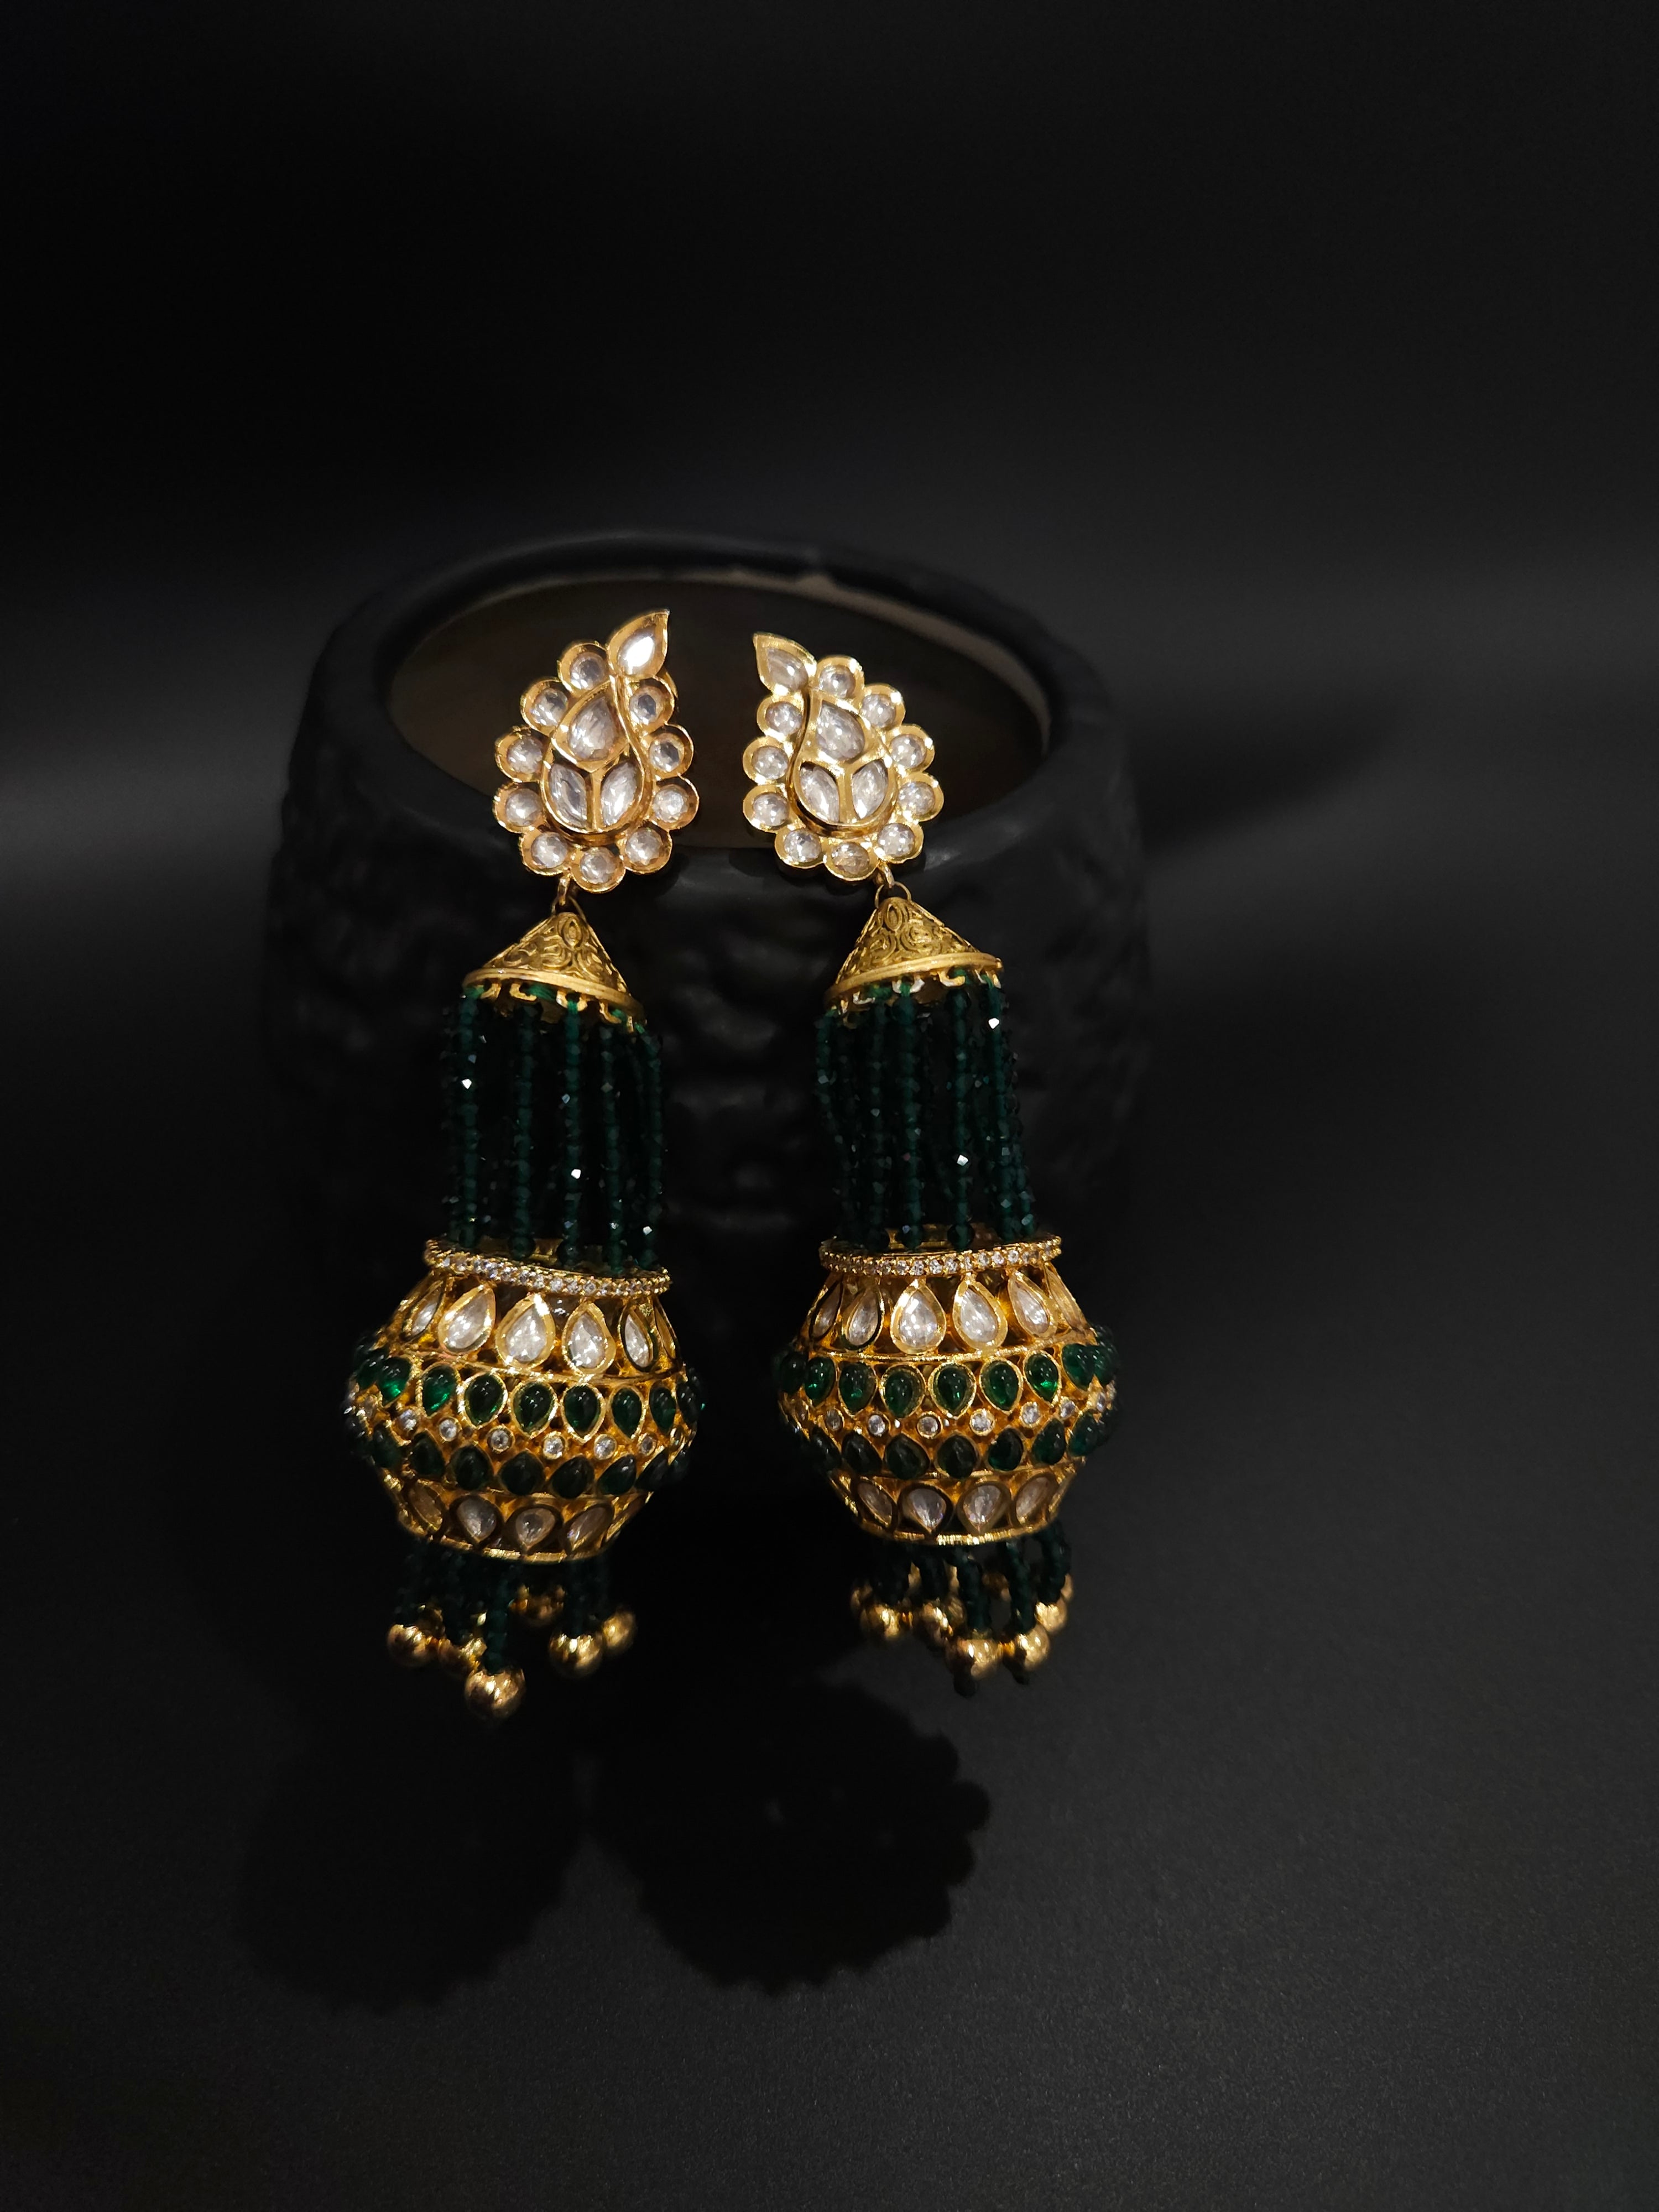 Ashmitha polki jhumka earrings